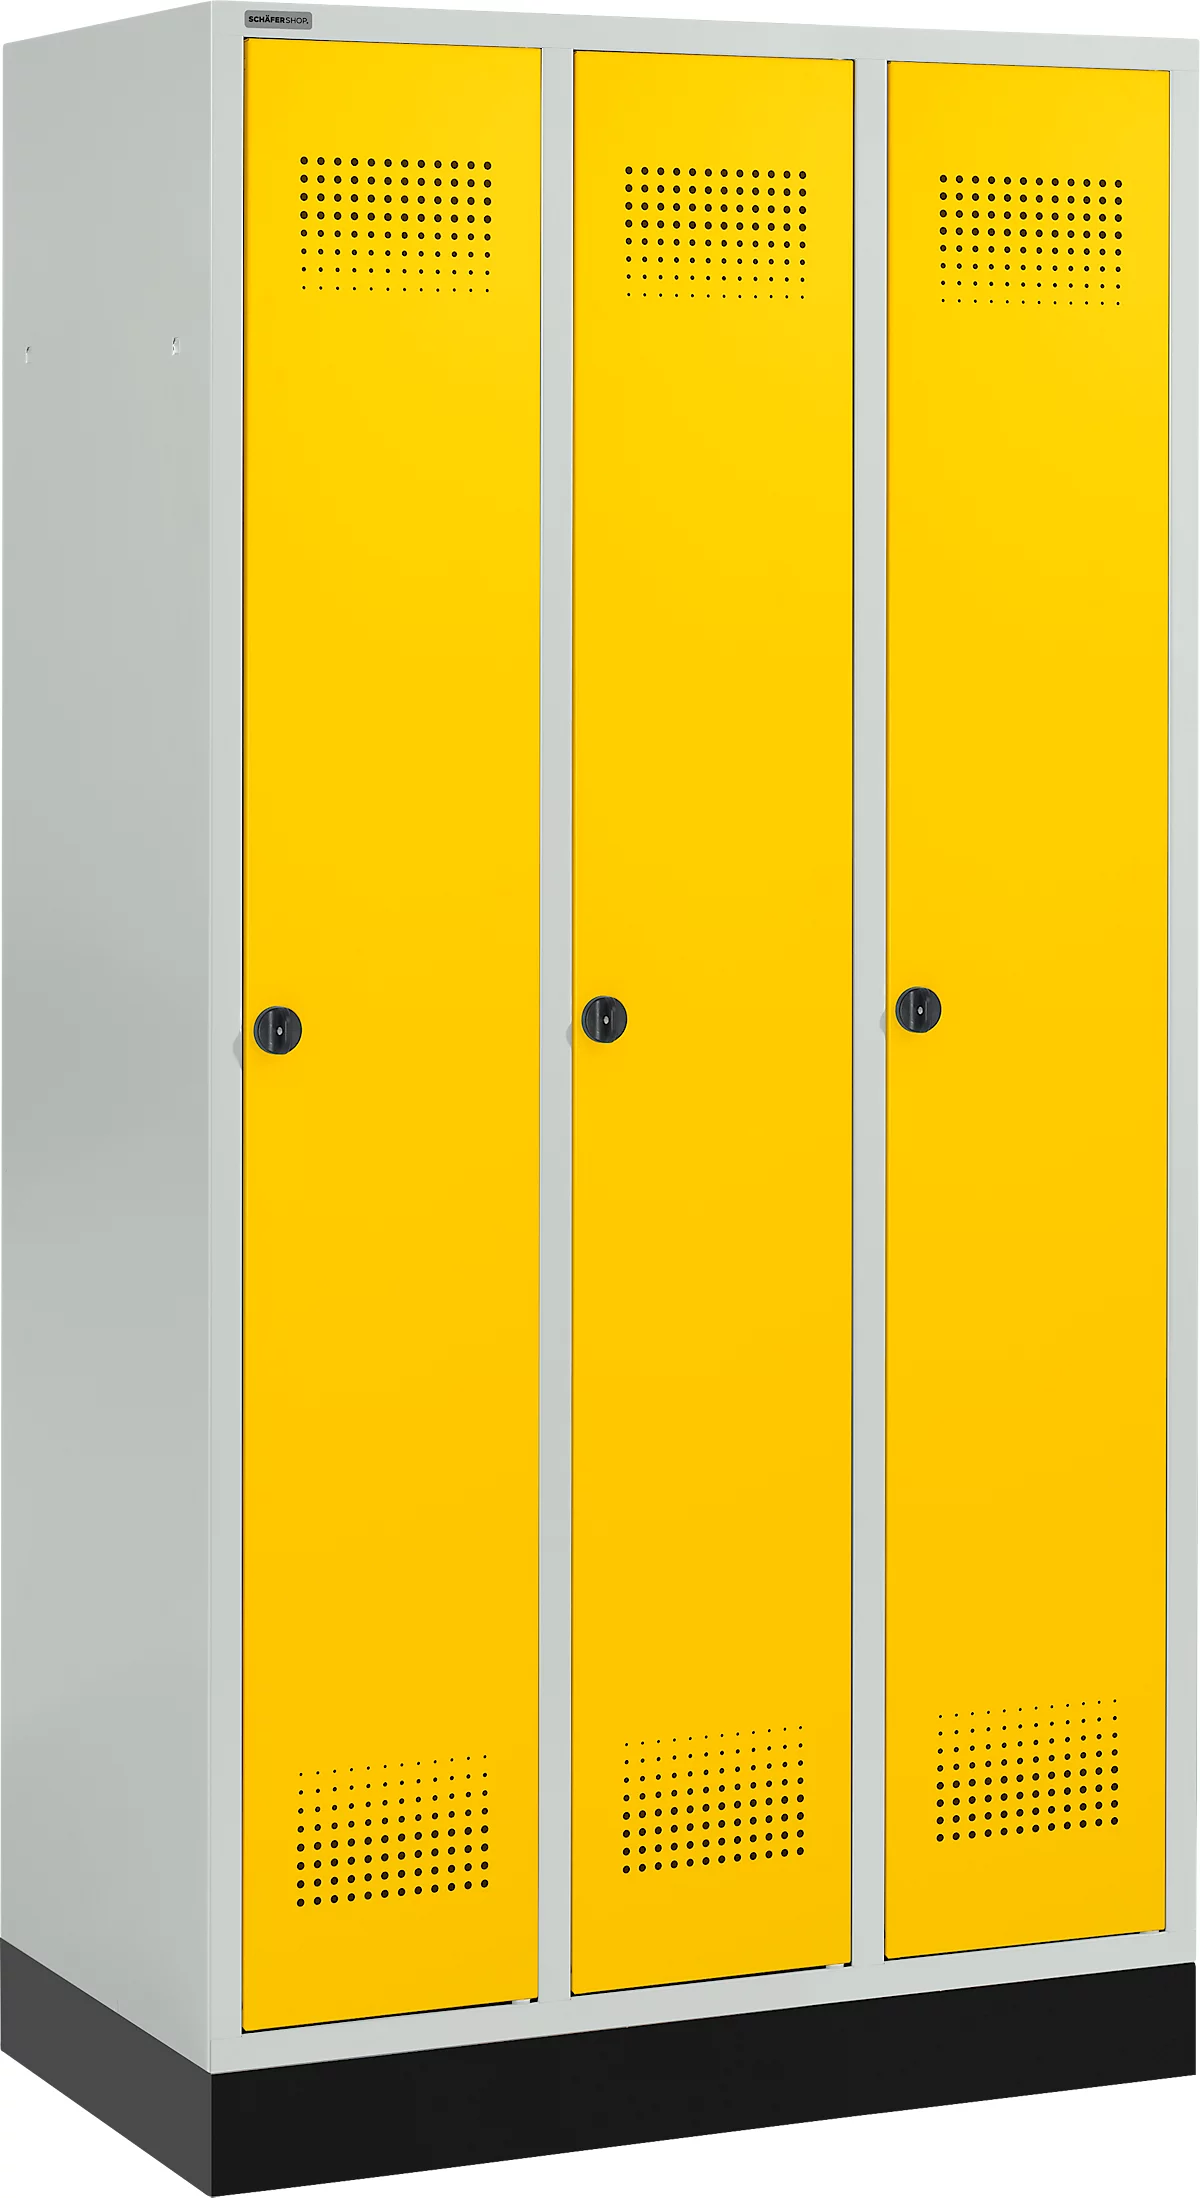 Schäfer Shop Genius Kledinglocker met fitting, 3 compartimenten, veiligheidsdraaigrendelslot, lichtgrijs/geel